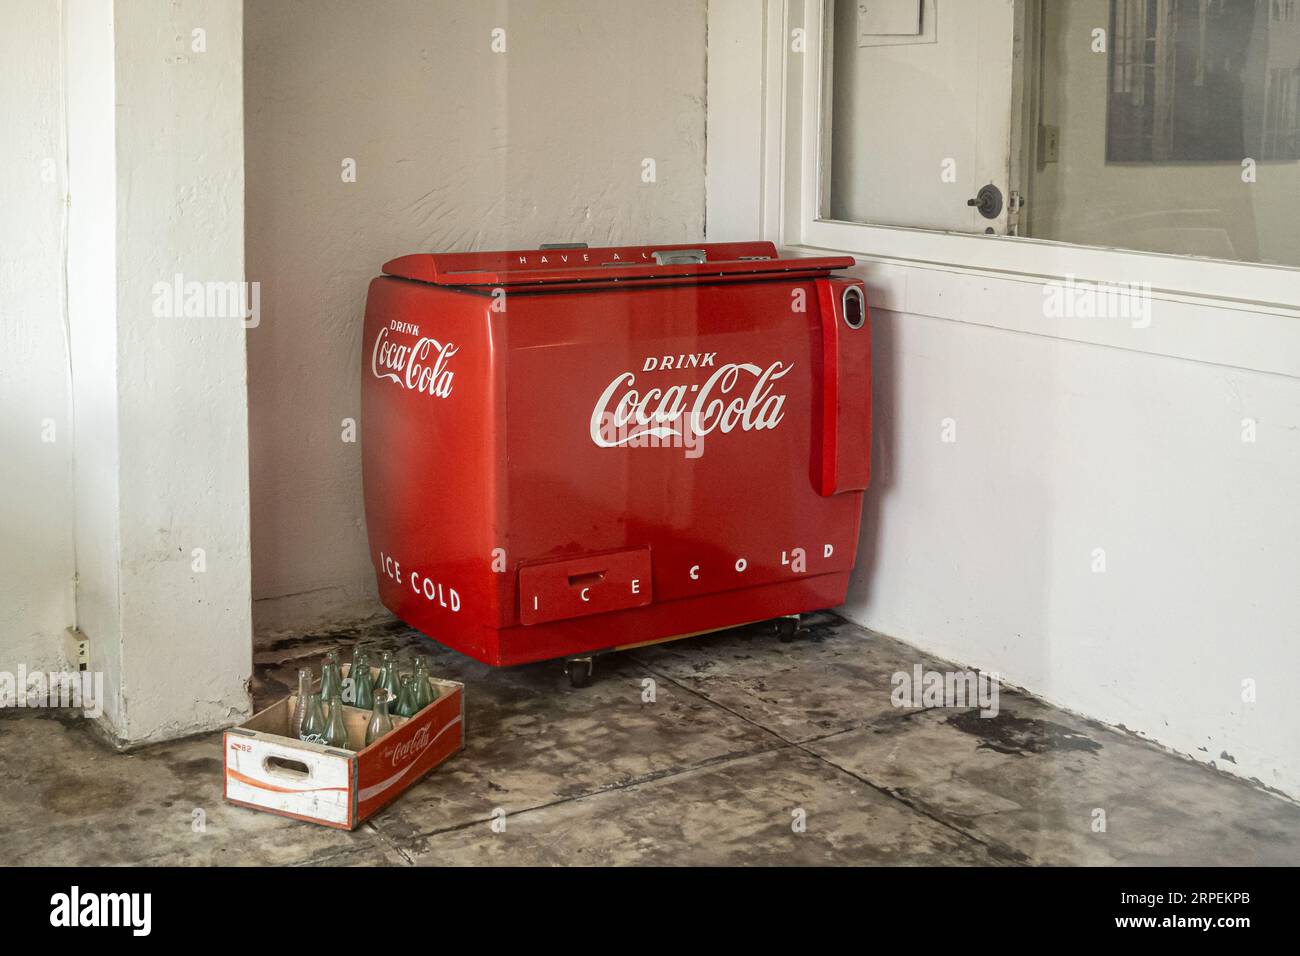 Flaschen Coca Cola in einem Kühlschrank mit Logo Stockfotografie - Alamy